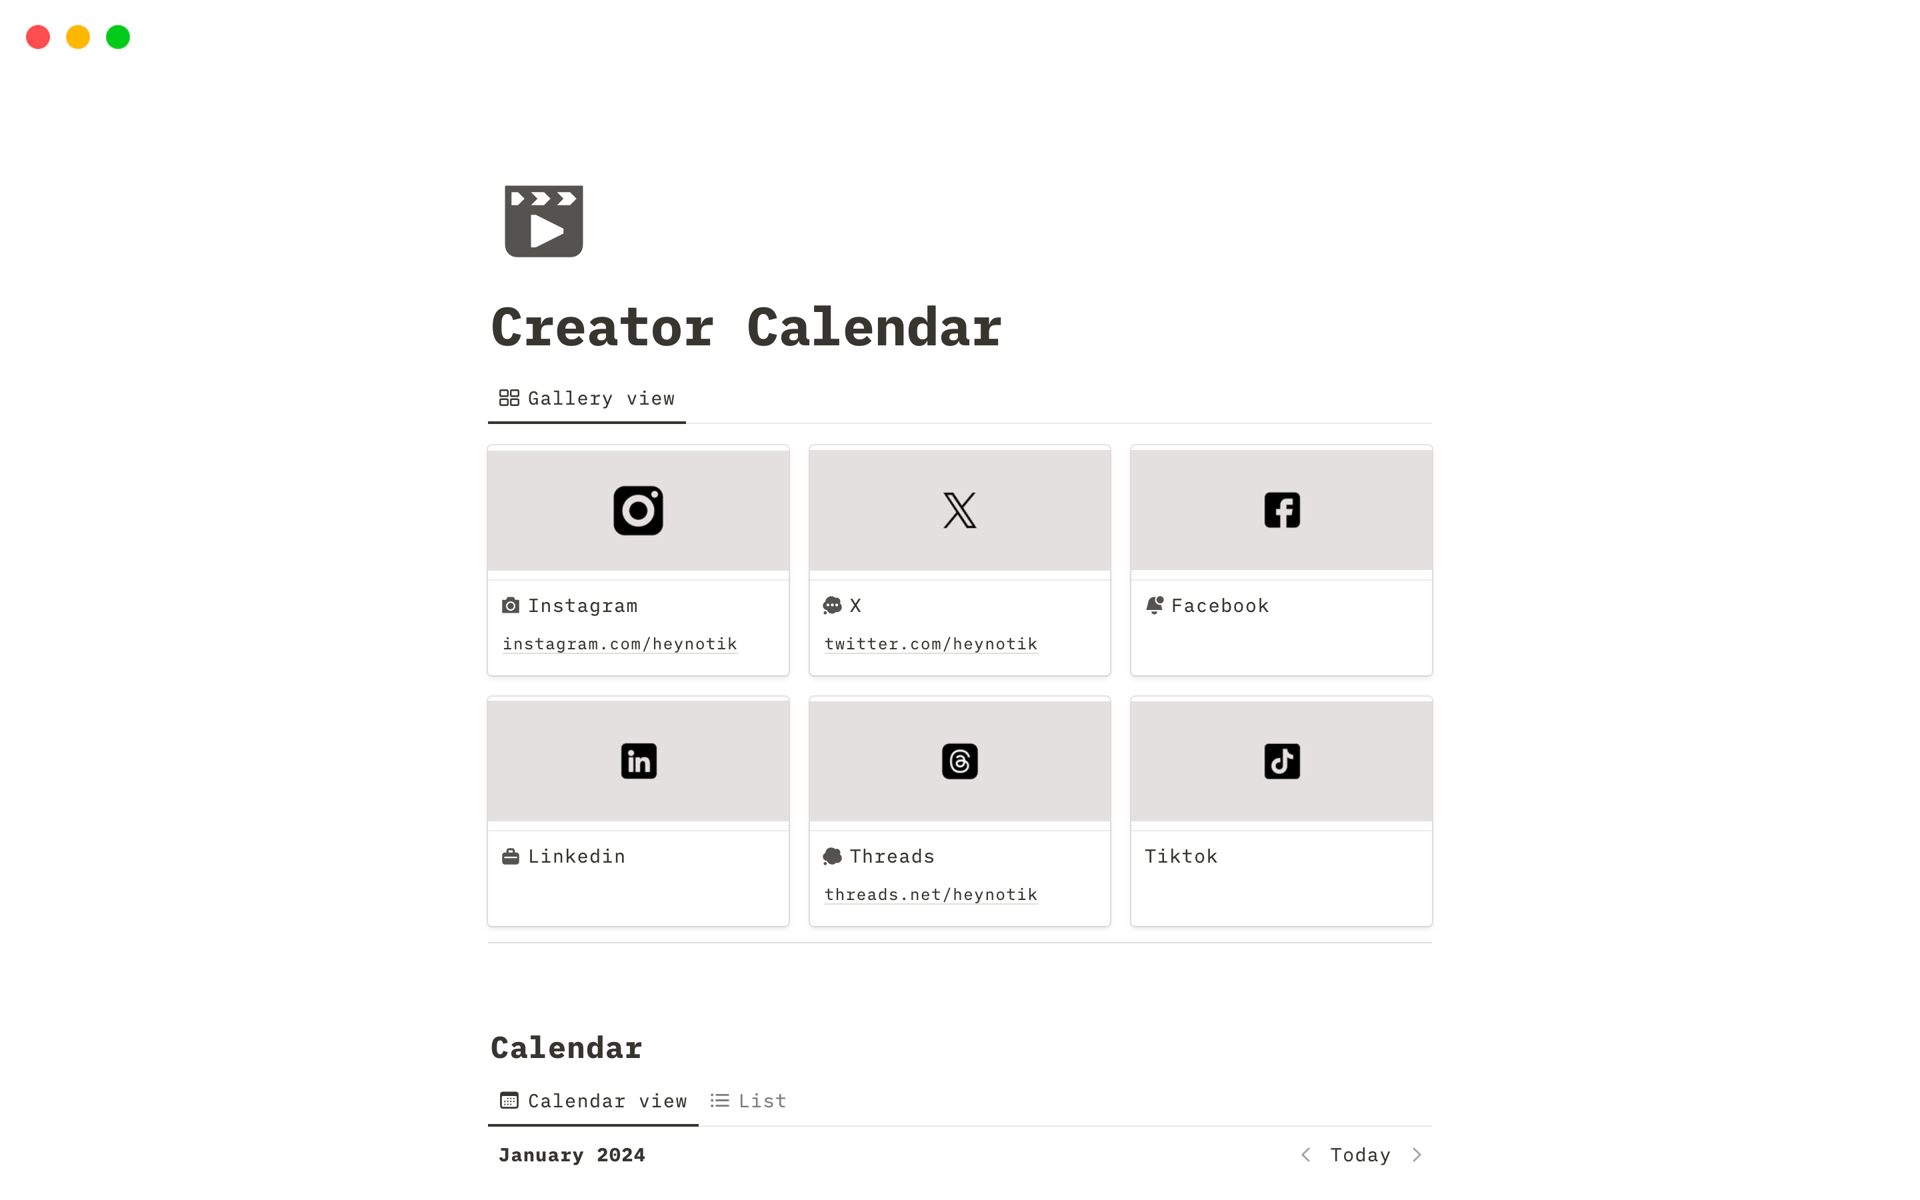 Creator Calendarのテンプレートのプレビュー